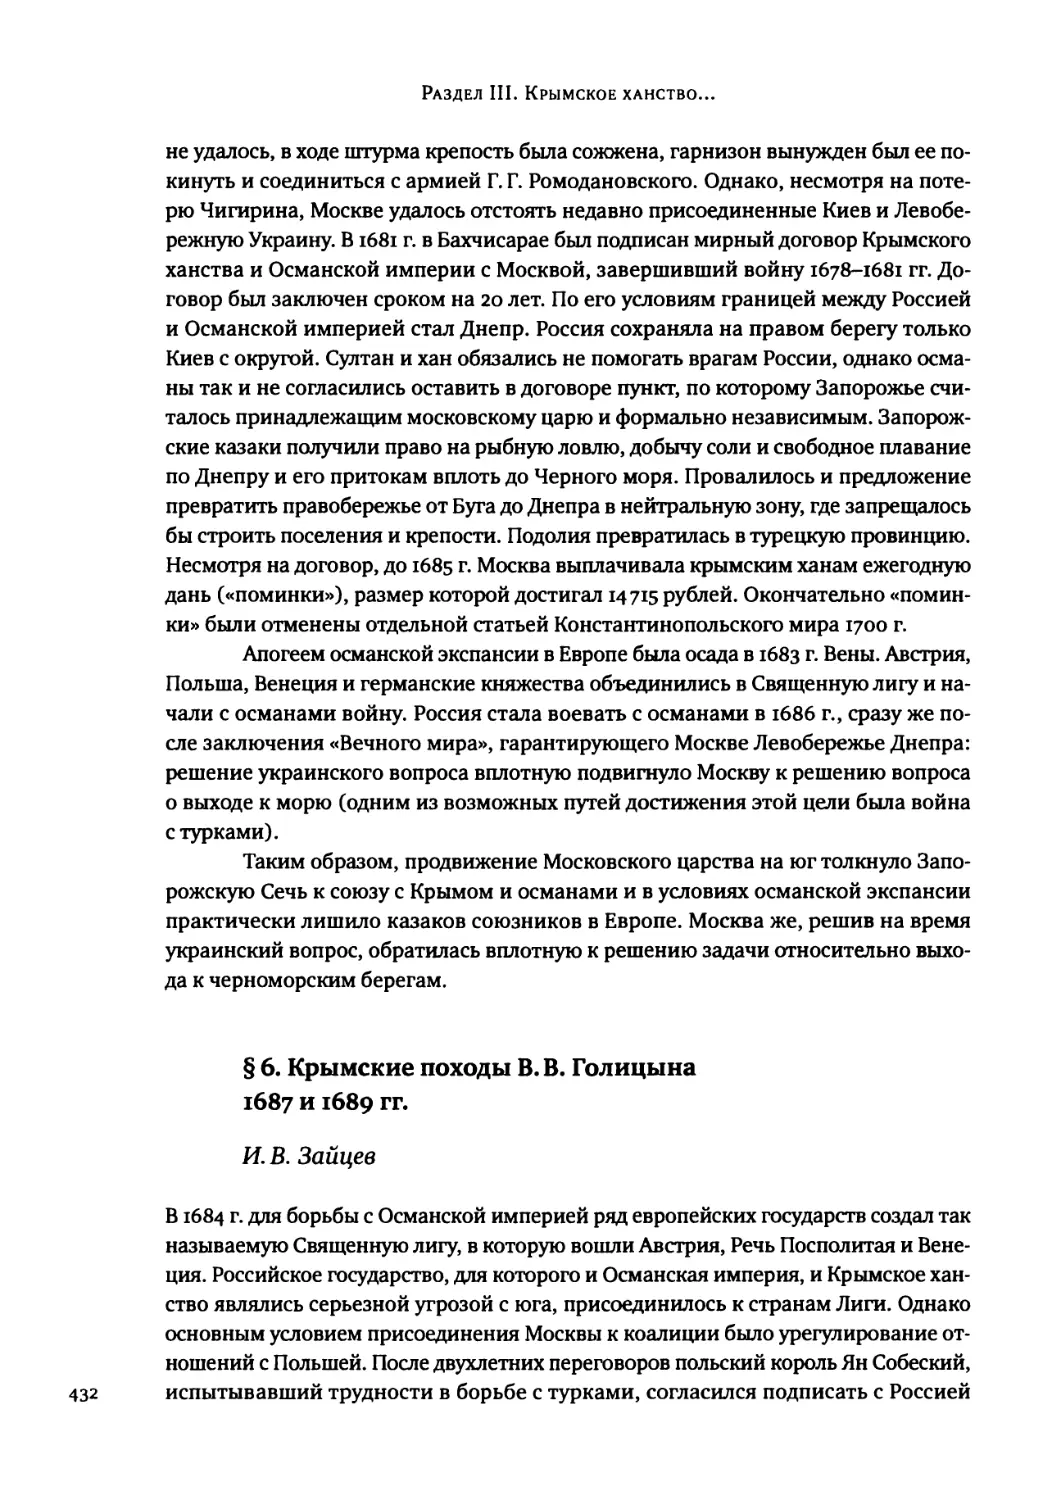 § 6. Крымские походы В. В. Голицына 1687 и 1689 гг